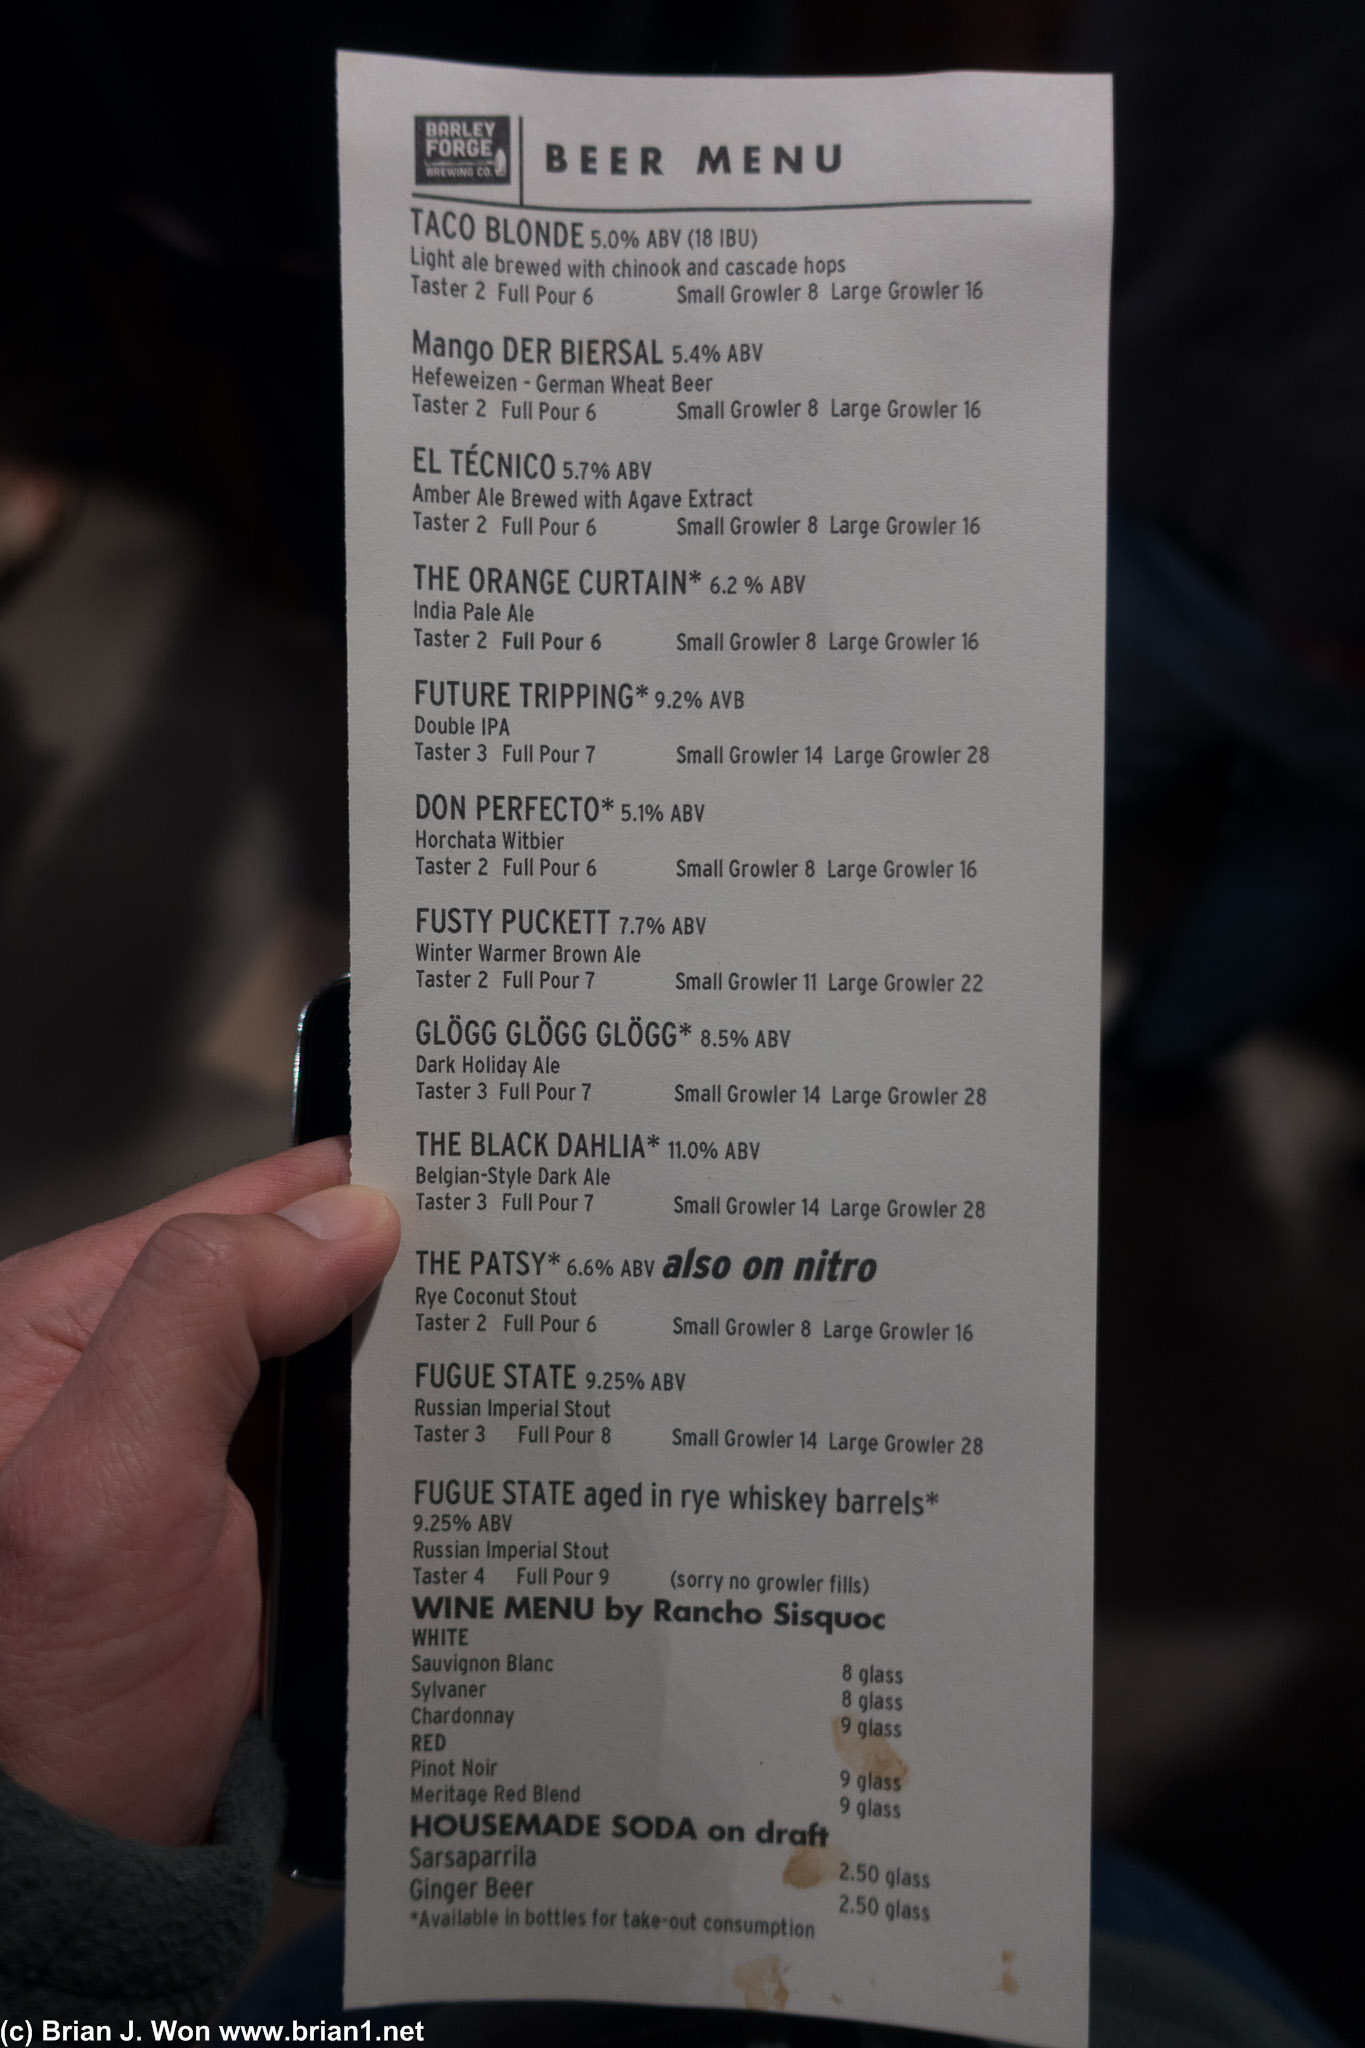 The beer menu.